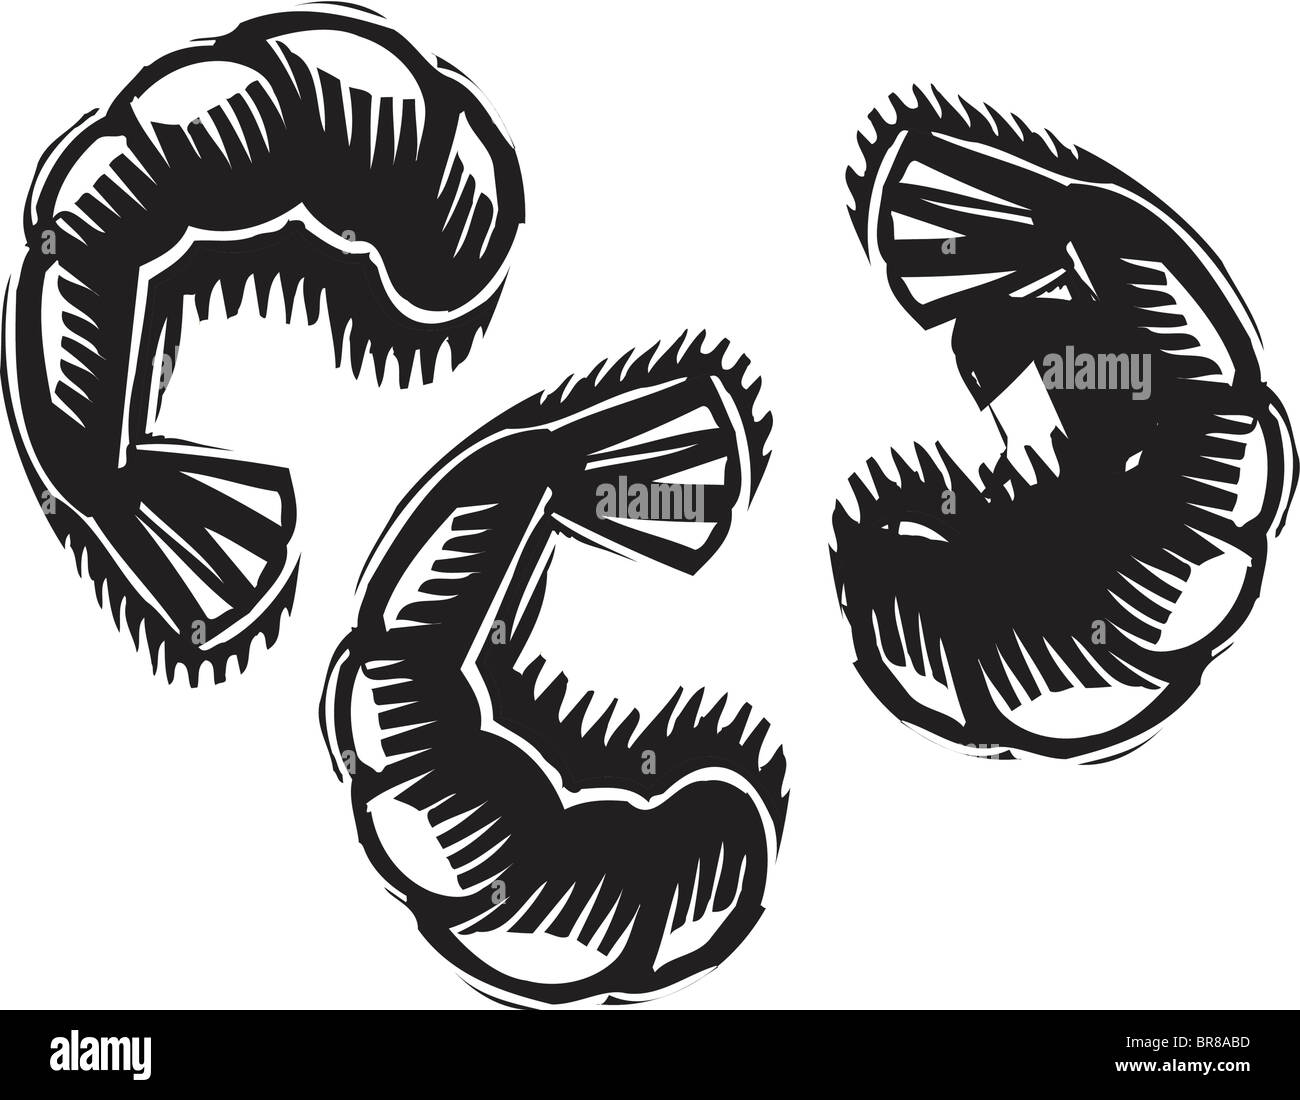 Une illustration en noir et blanc de trois crevettes Banque D'Images